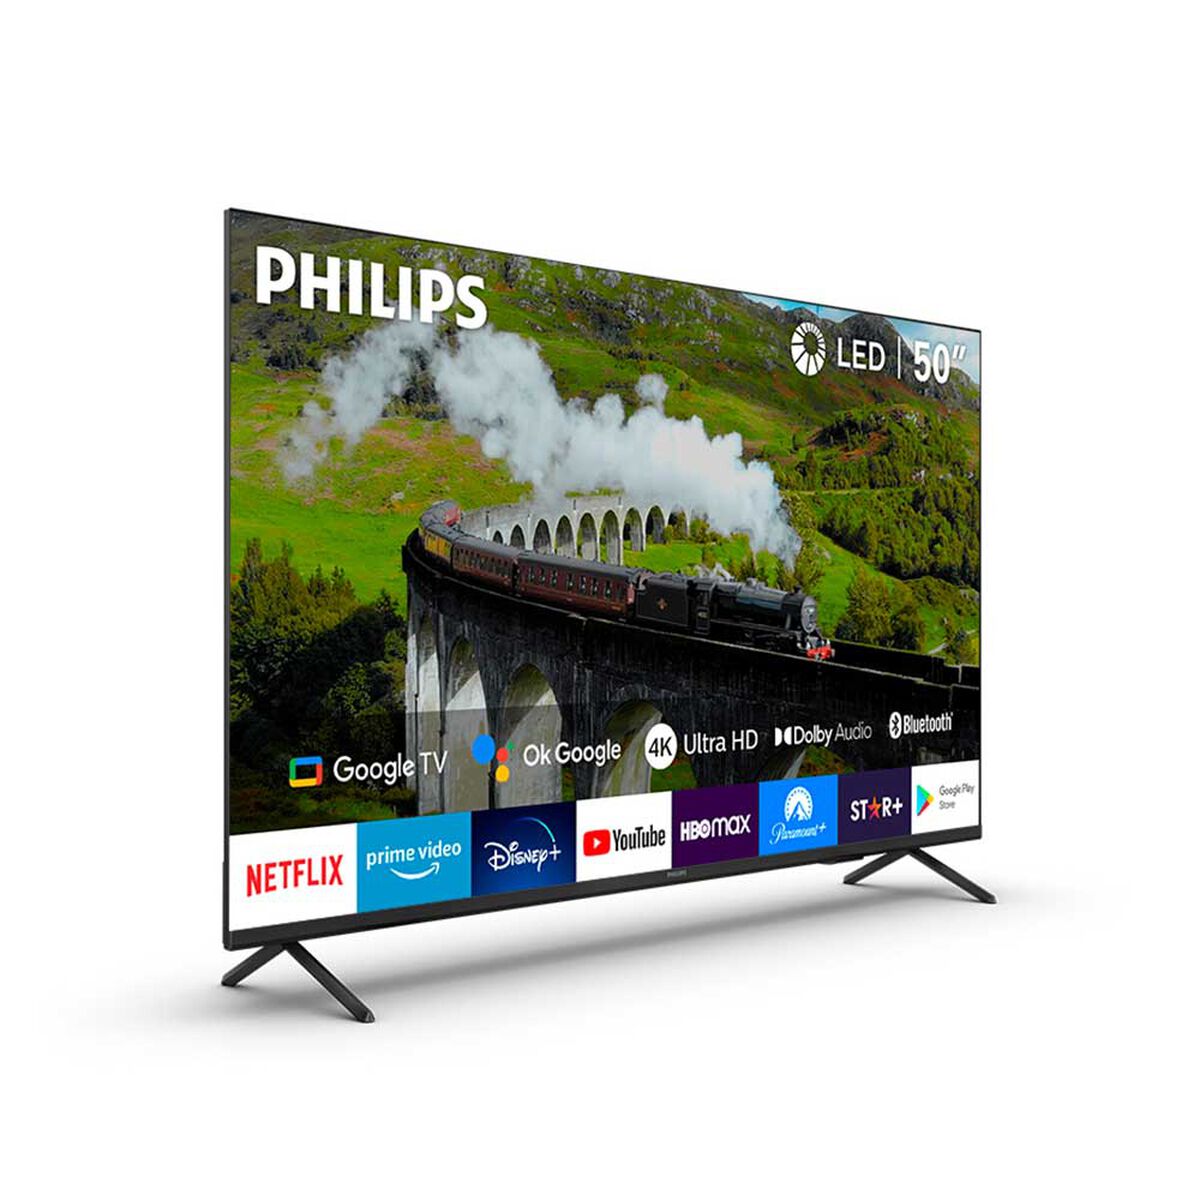 LED 50" Philips 50PUD7408 Smart TV UHD